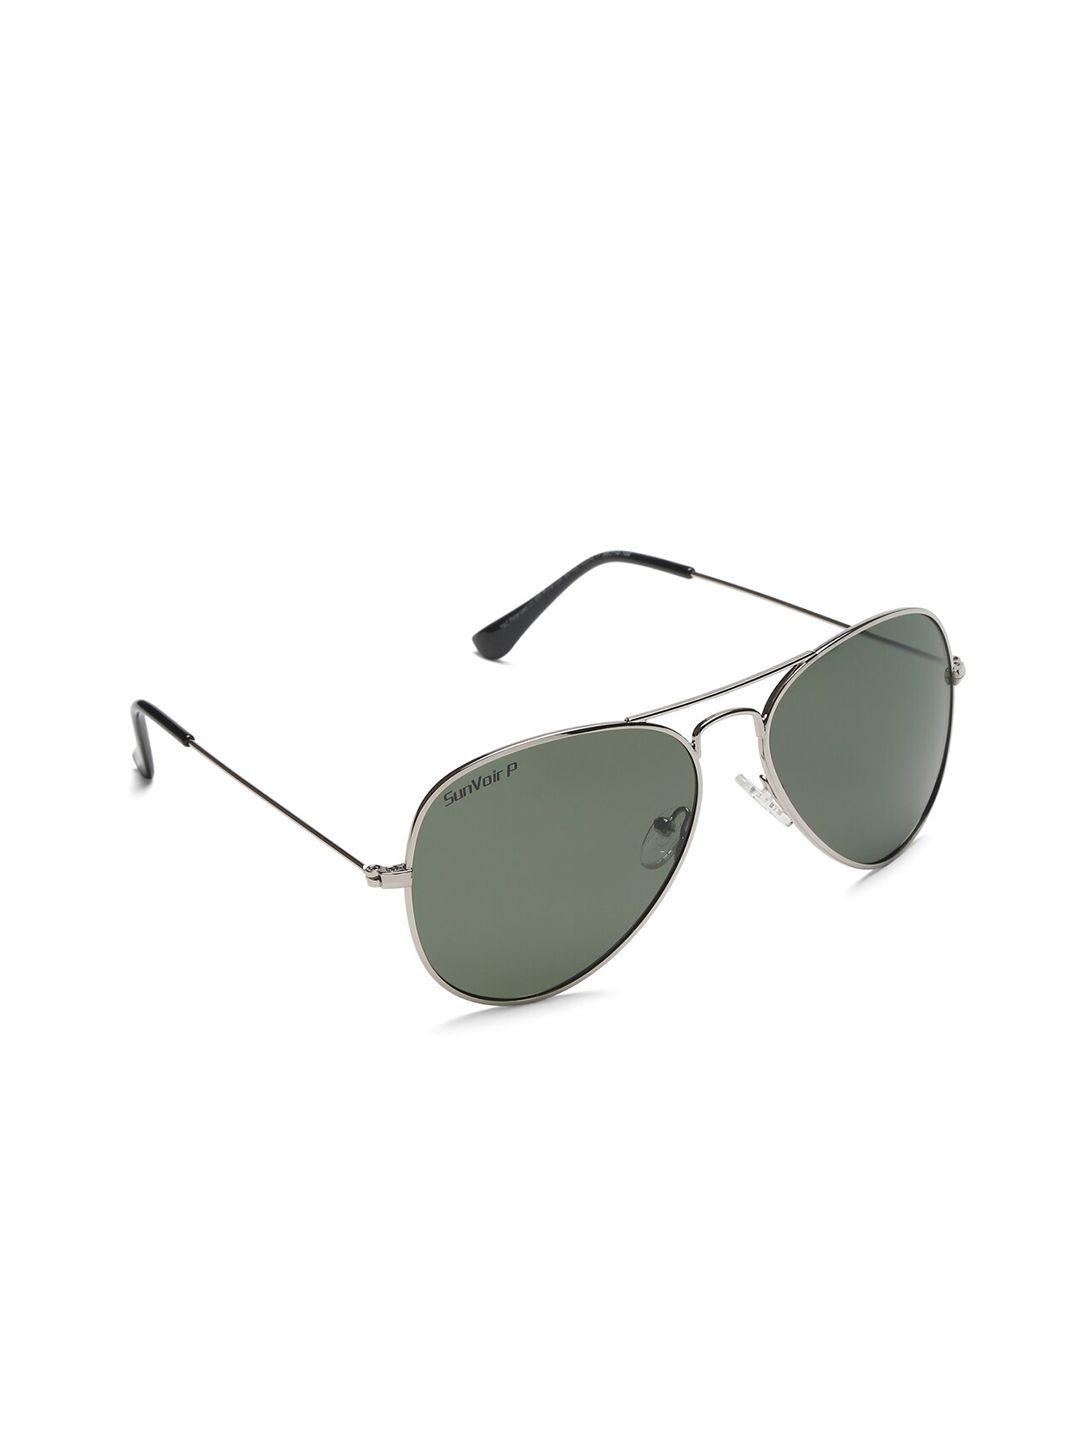 sunnies full rim aviator sunglasses with polarised lens sunnies-020-c11